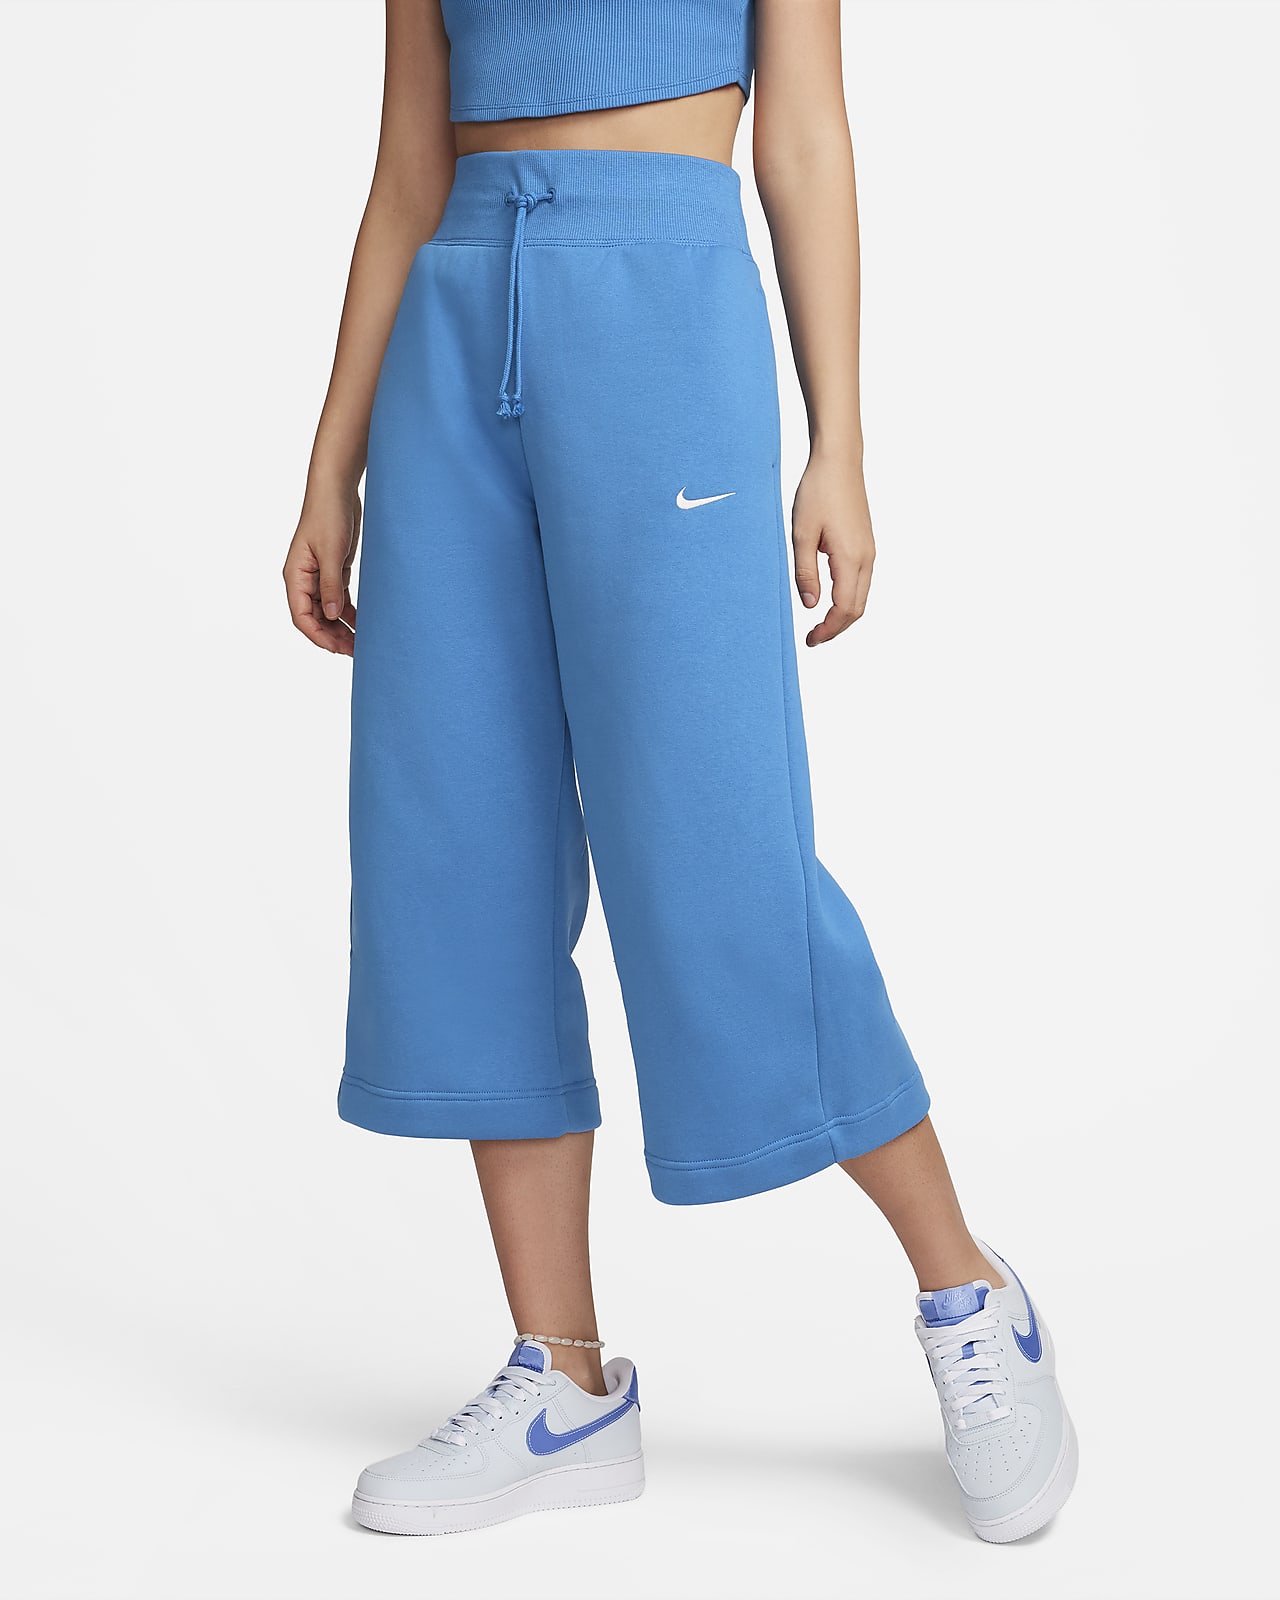 Nike Sportswear Phoenix Fleece verkürzte Trainingshose mit hohem Taillenbund für Damen